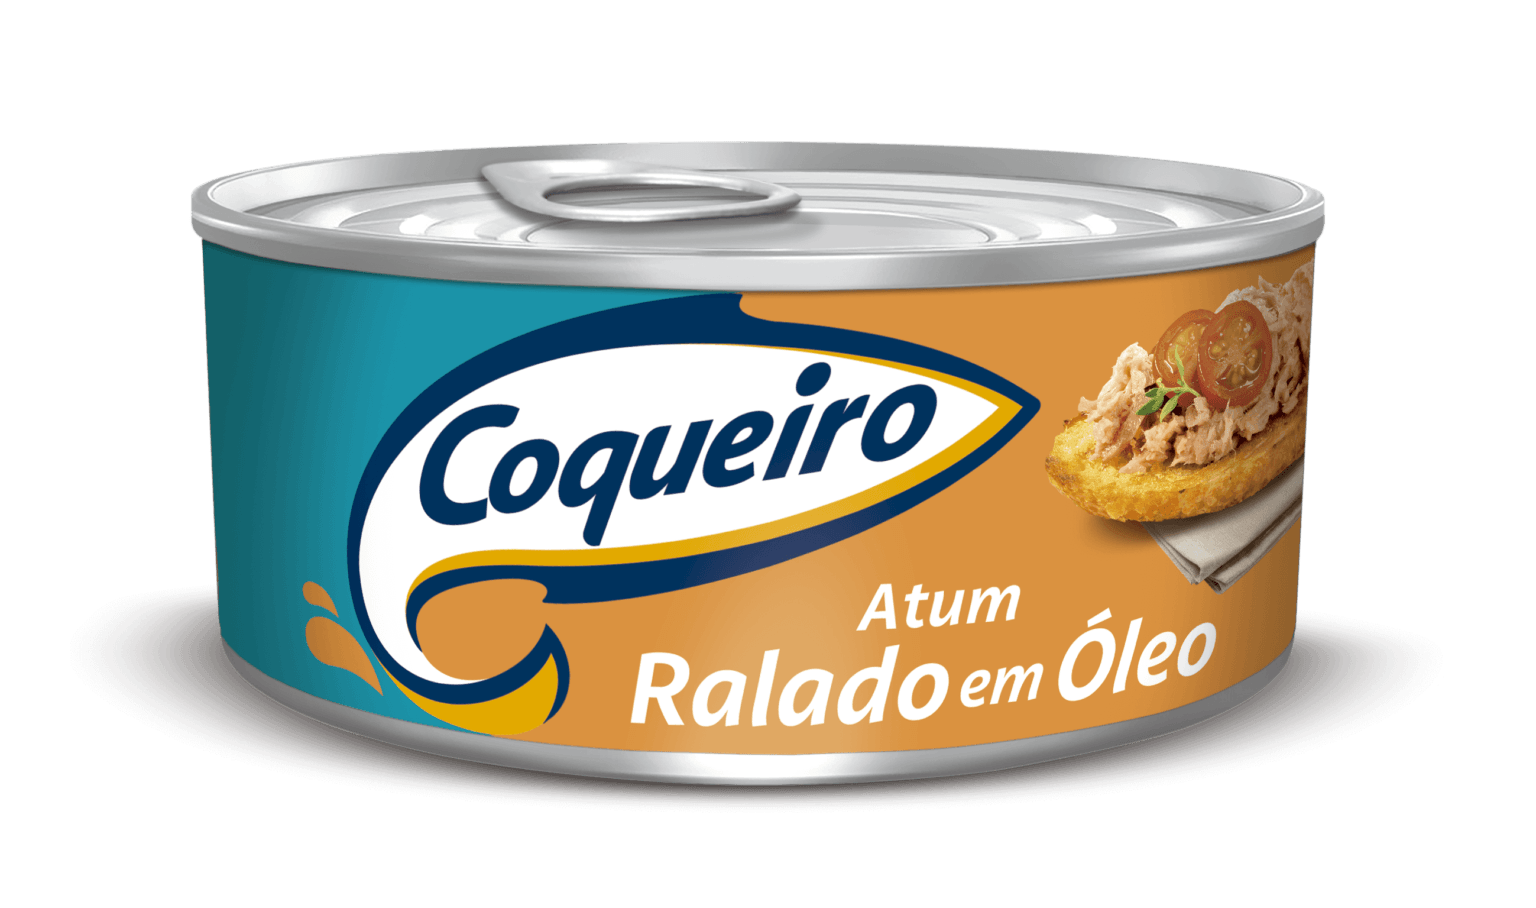 Atum-Ralado-Oleo-COQUEIRO-5216